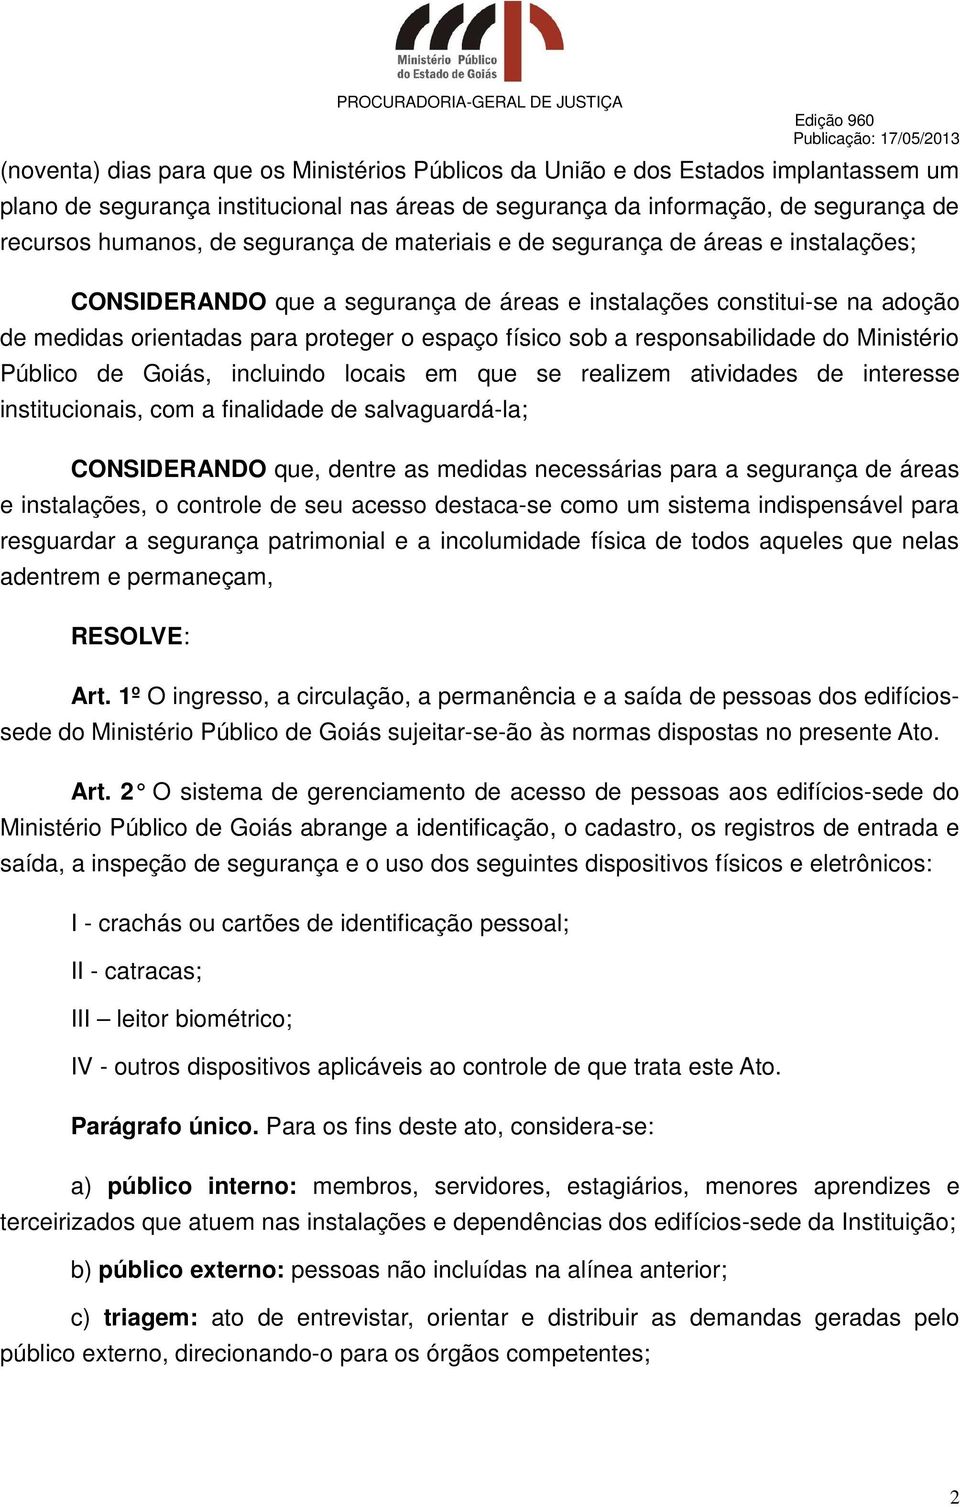 responsabilidade do Ministério Público de Goiás, incluindo locais em que se realizem atividades de interesse institucionais, com a finalidade de salvaguardá-la; CONSIDERANDO que, dentre as medidas